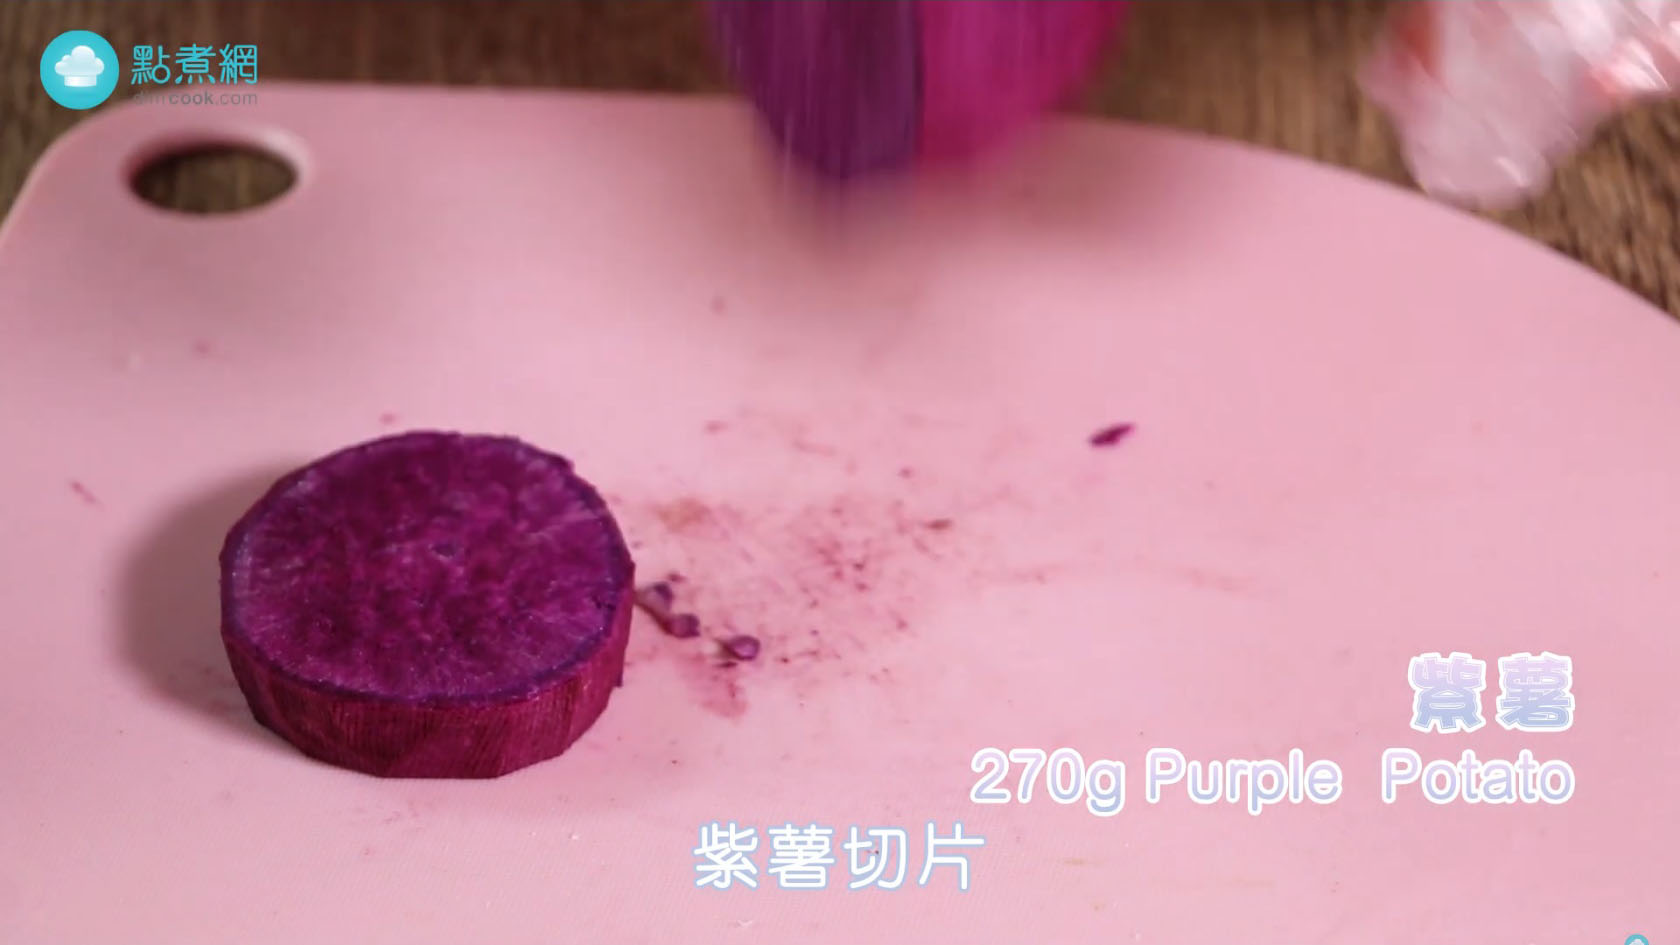 紫薯芋泥